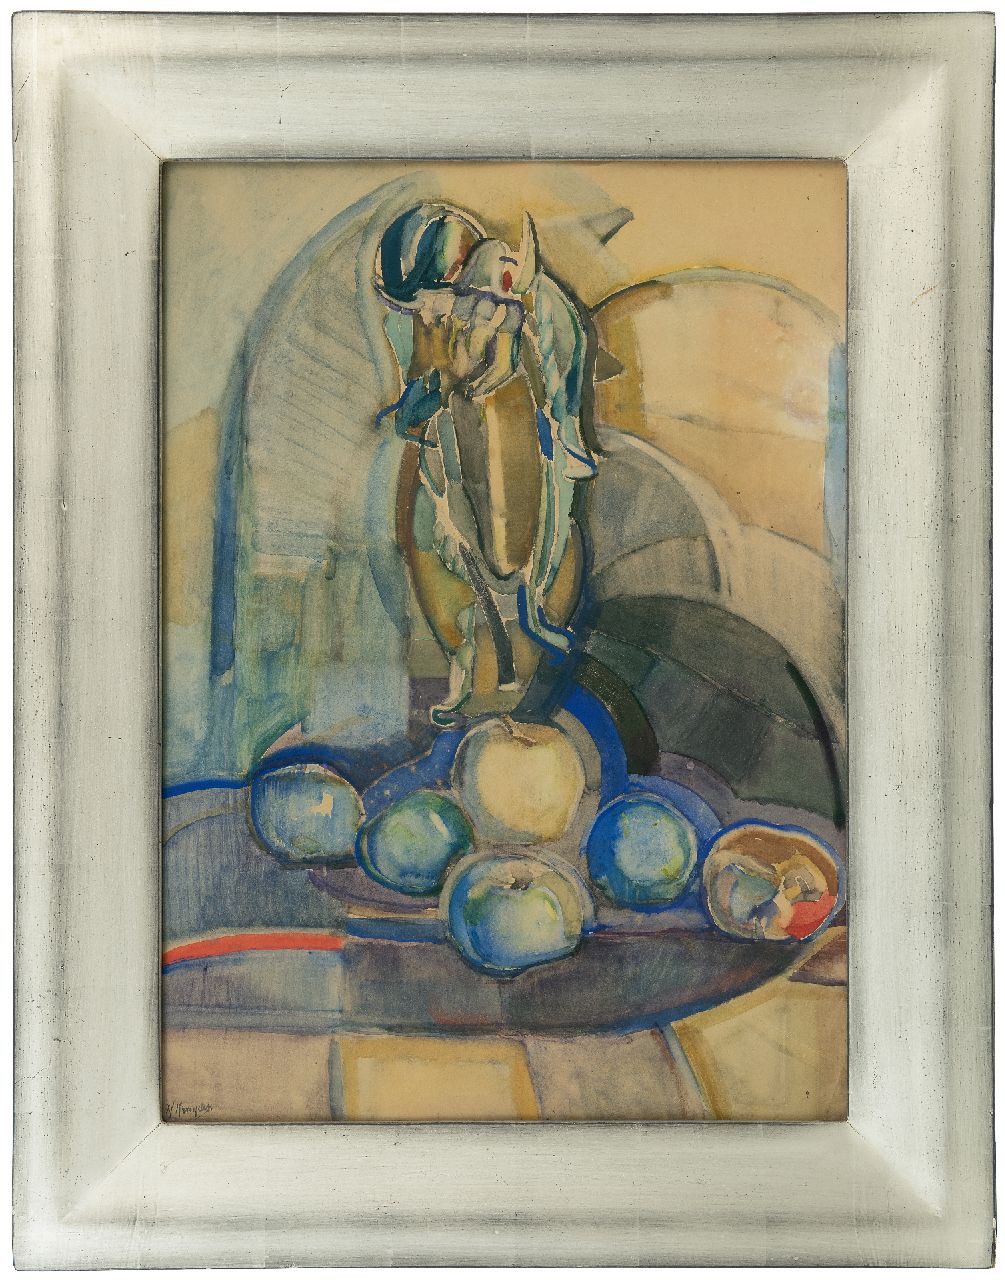 Kruyder H.J.  | 'Herman' Justus Kruyder | Aquarellen en tekeningen te koop aangeboden | Stilleven met appels, aquarel op papier 62,0 x 43,0 cm, gesigneerd linksonder en te dateren ca. 1916-1922